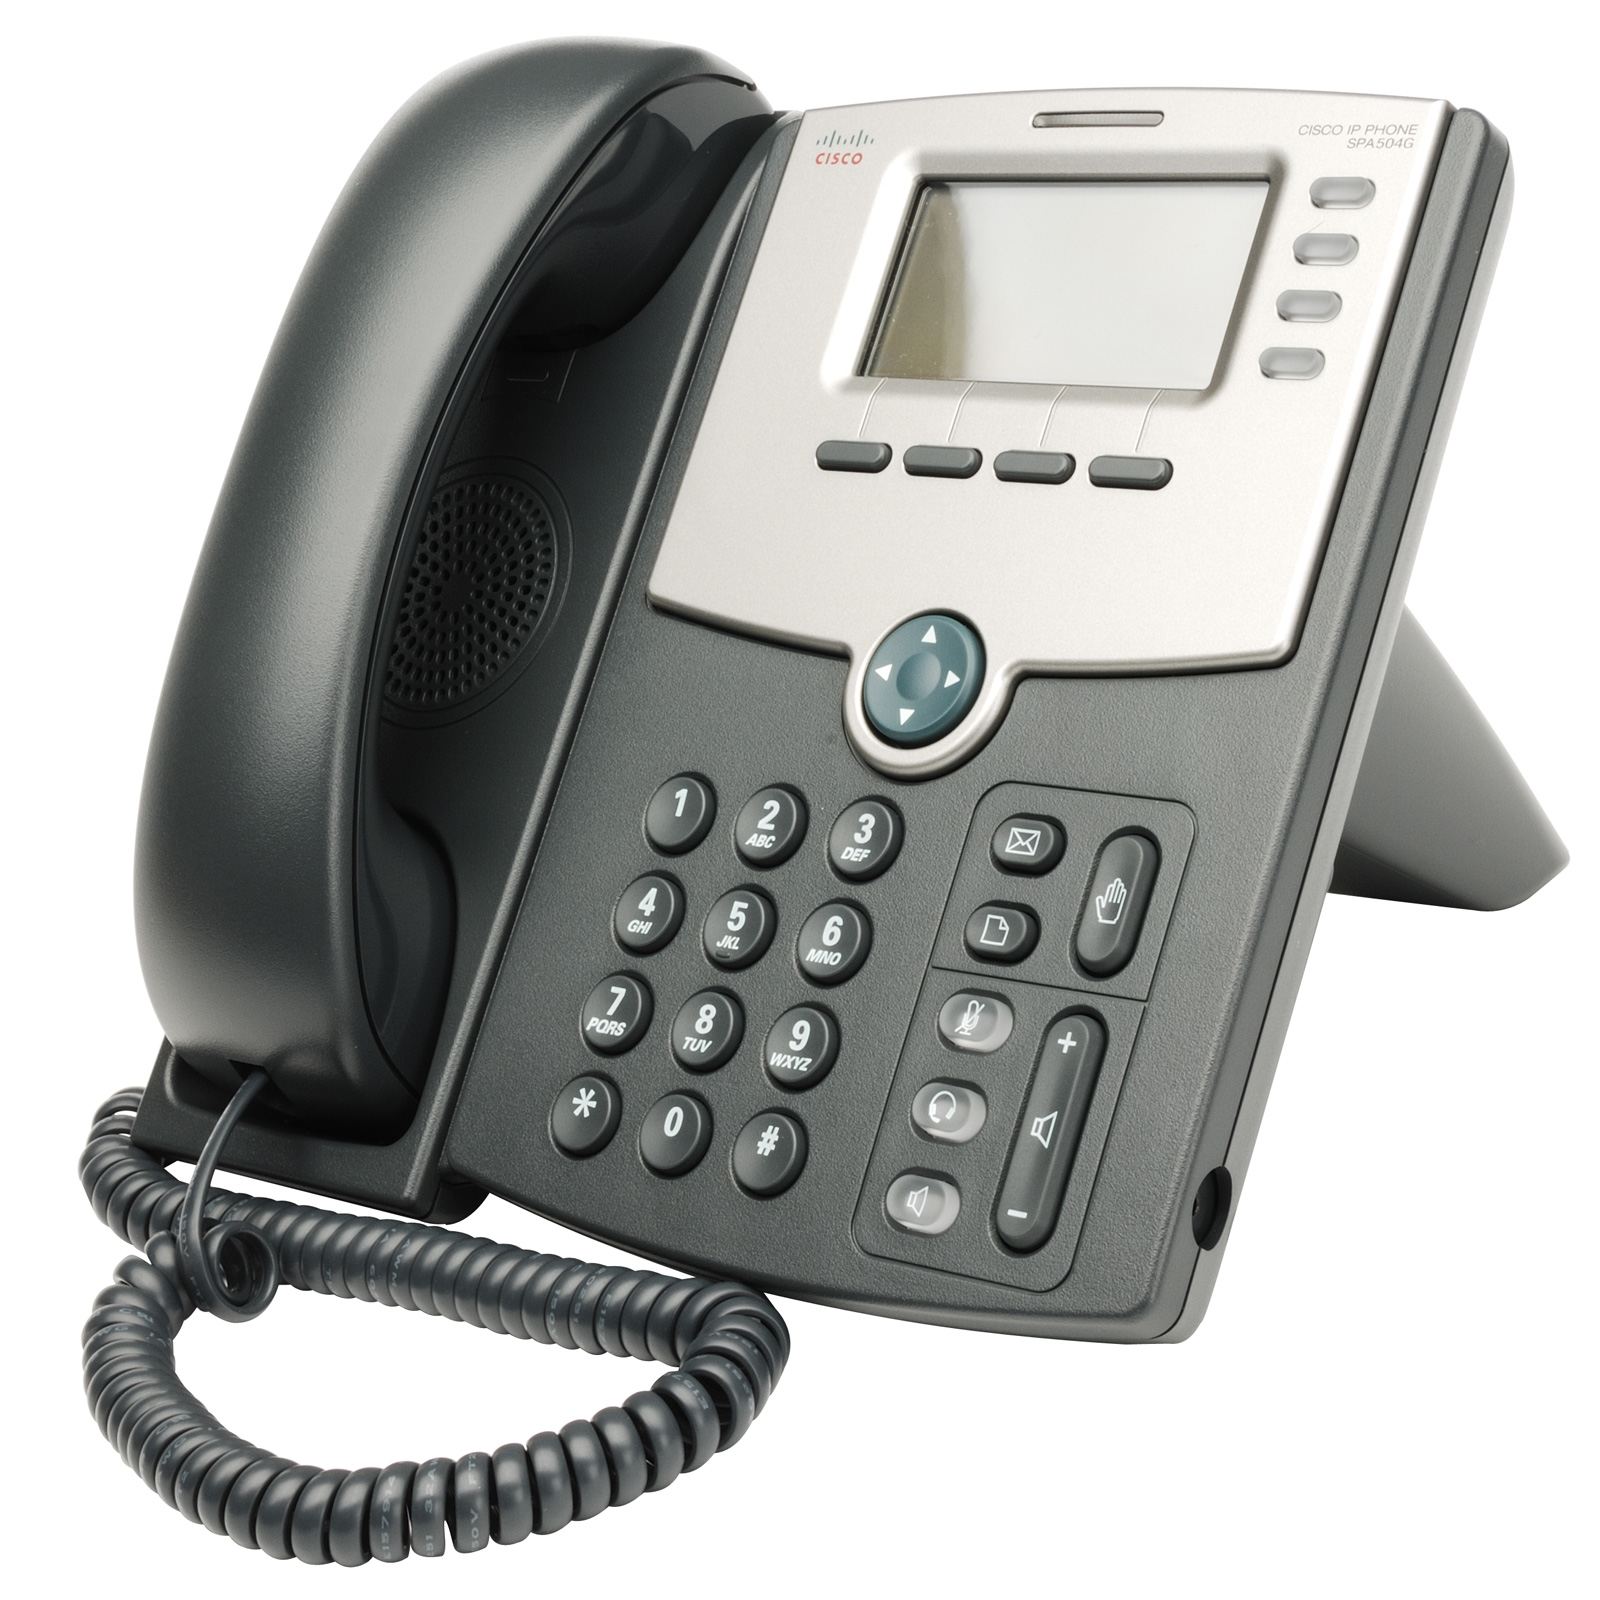 SPA504G SPA 504G 504 G IP telefoon voor 4 lijnen – MKH-Electronics